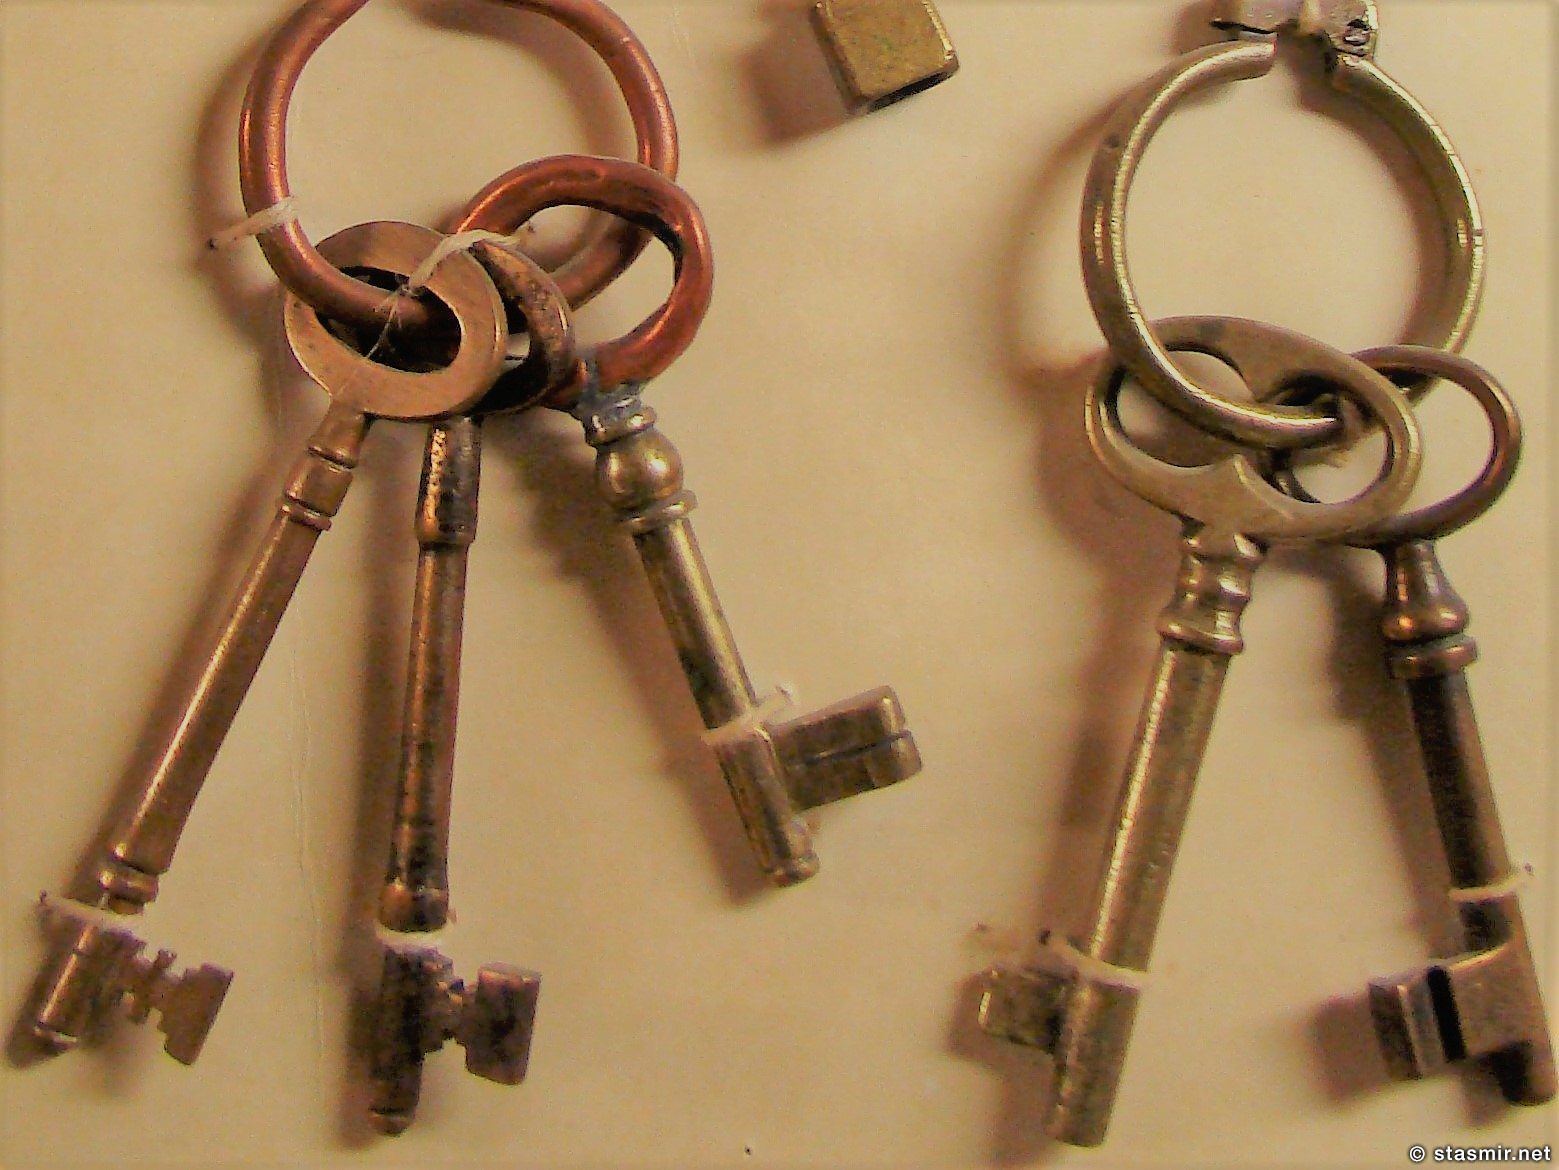 Она сказала "Возьми с собой ключи от моих дверей" - коллекция старых ключей в музее Скоугар, фото Стасмир, photo Stasmir